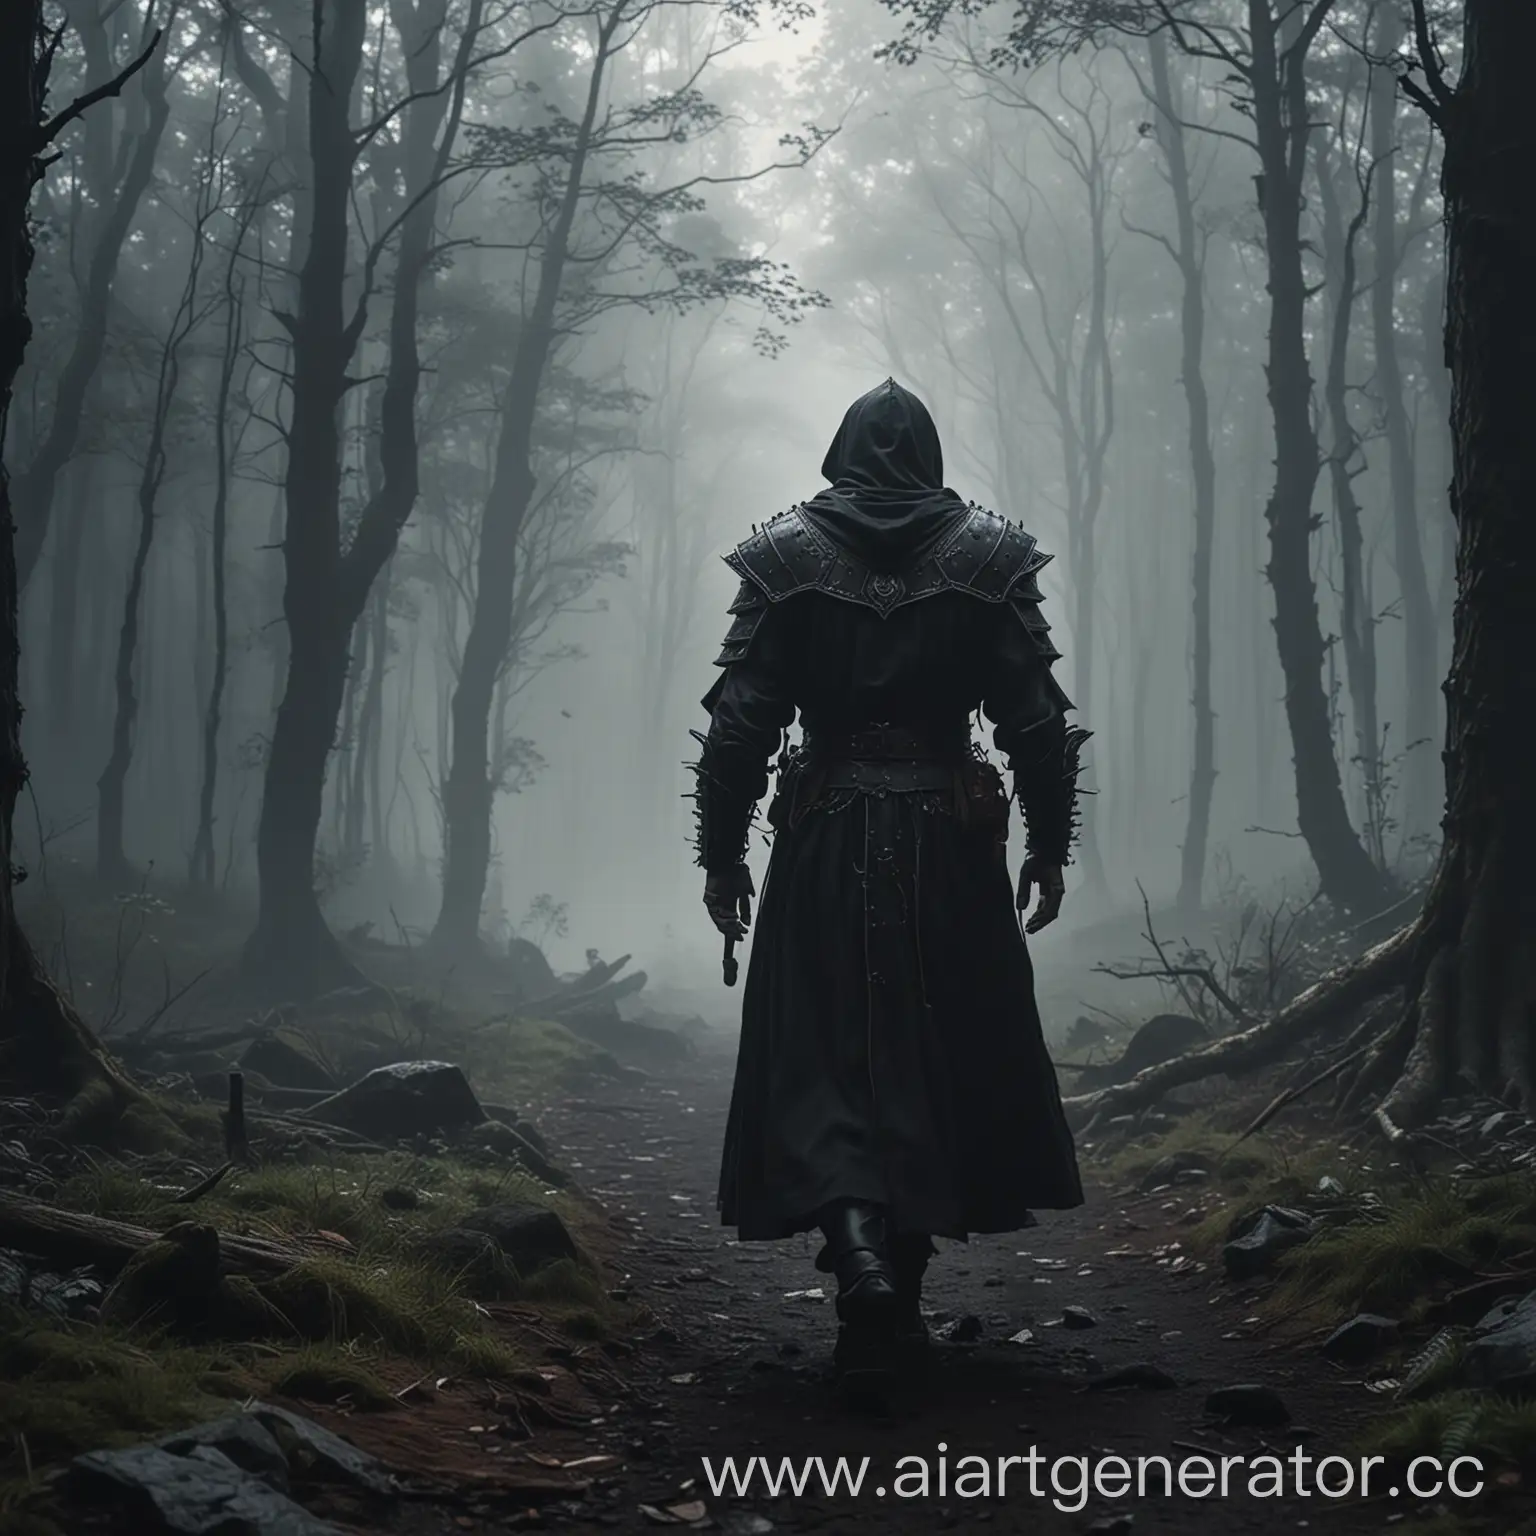 человек, жрец, в тёмных латах, бродит по туманному лесу, 4к качество